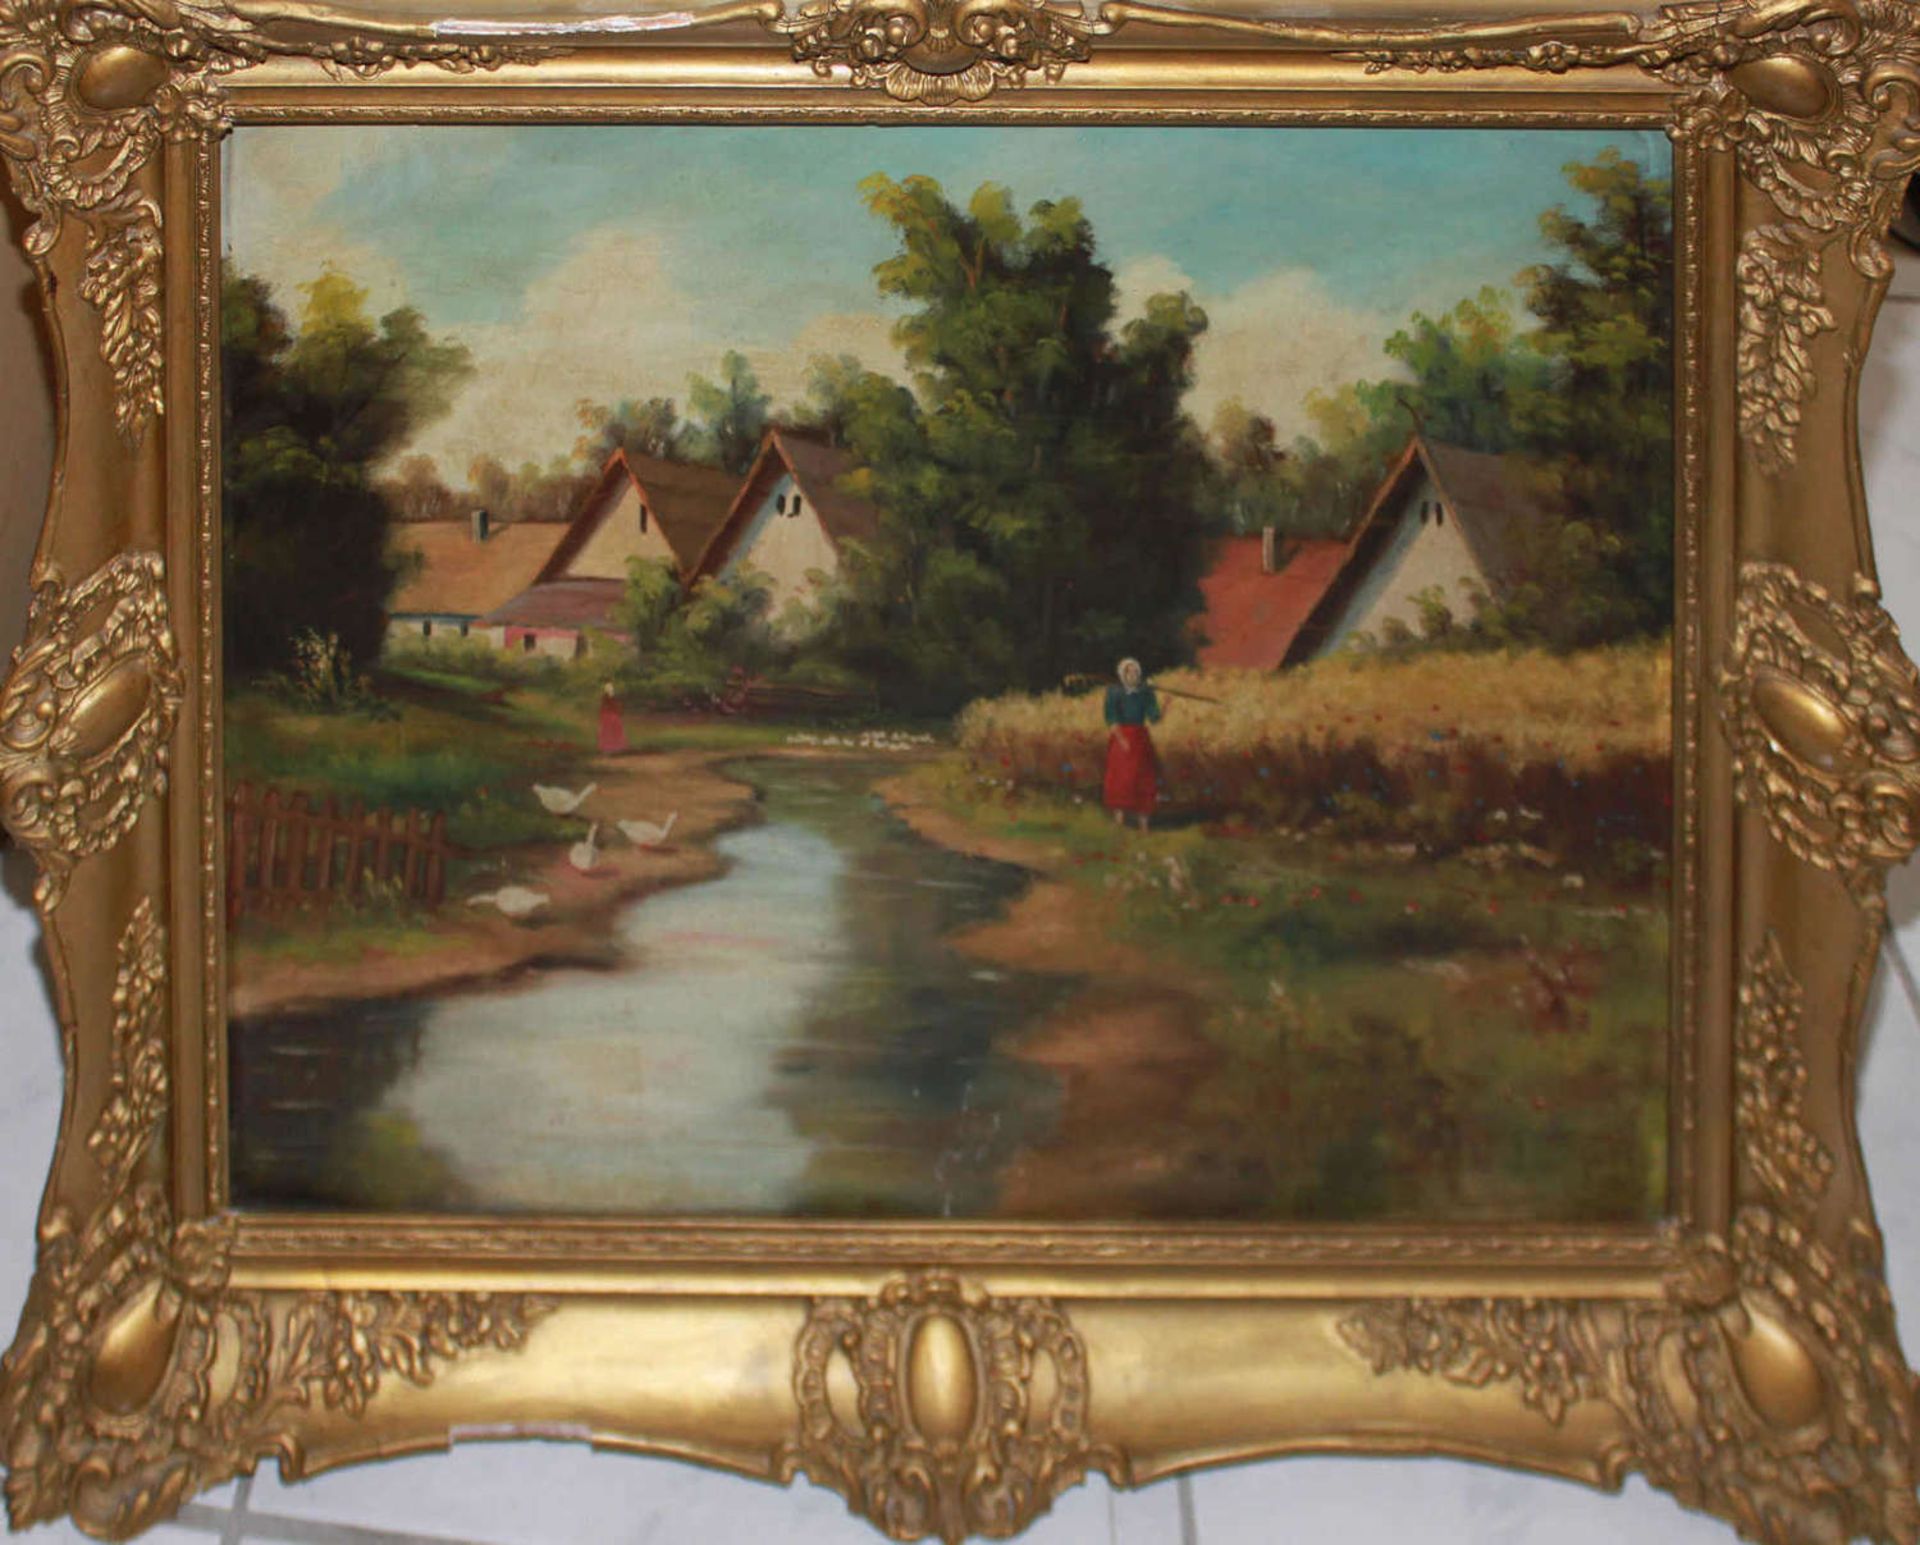 Unbekannter Künstler, Ölgemälde auf Holz, "Bachlauf am Dorf", mit Personenstaffage, links unten